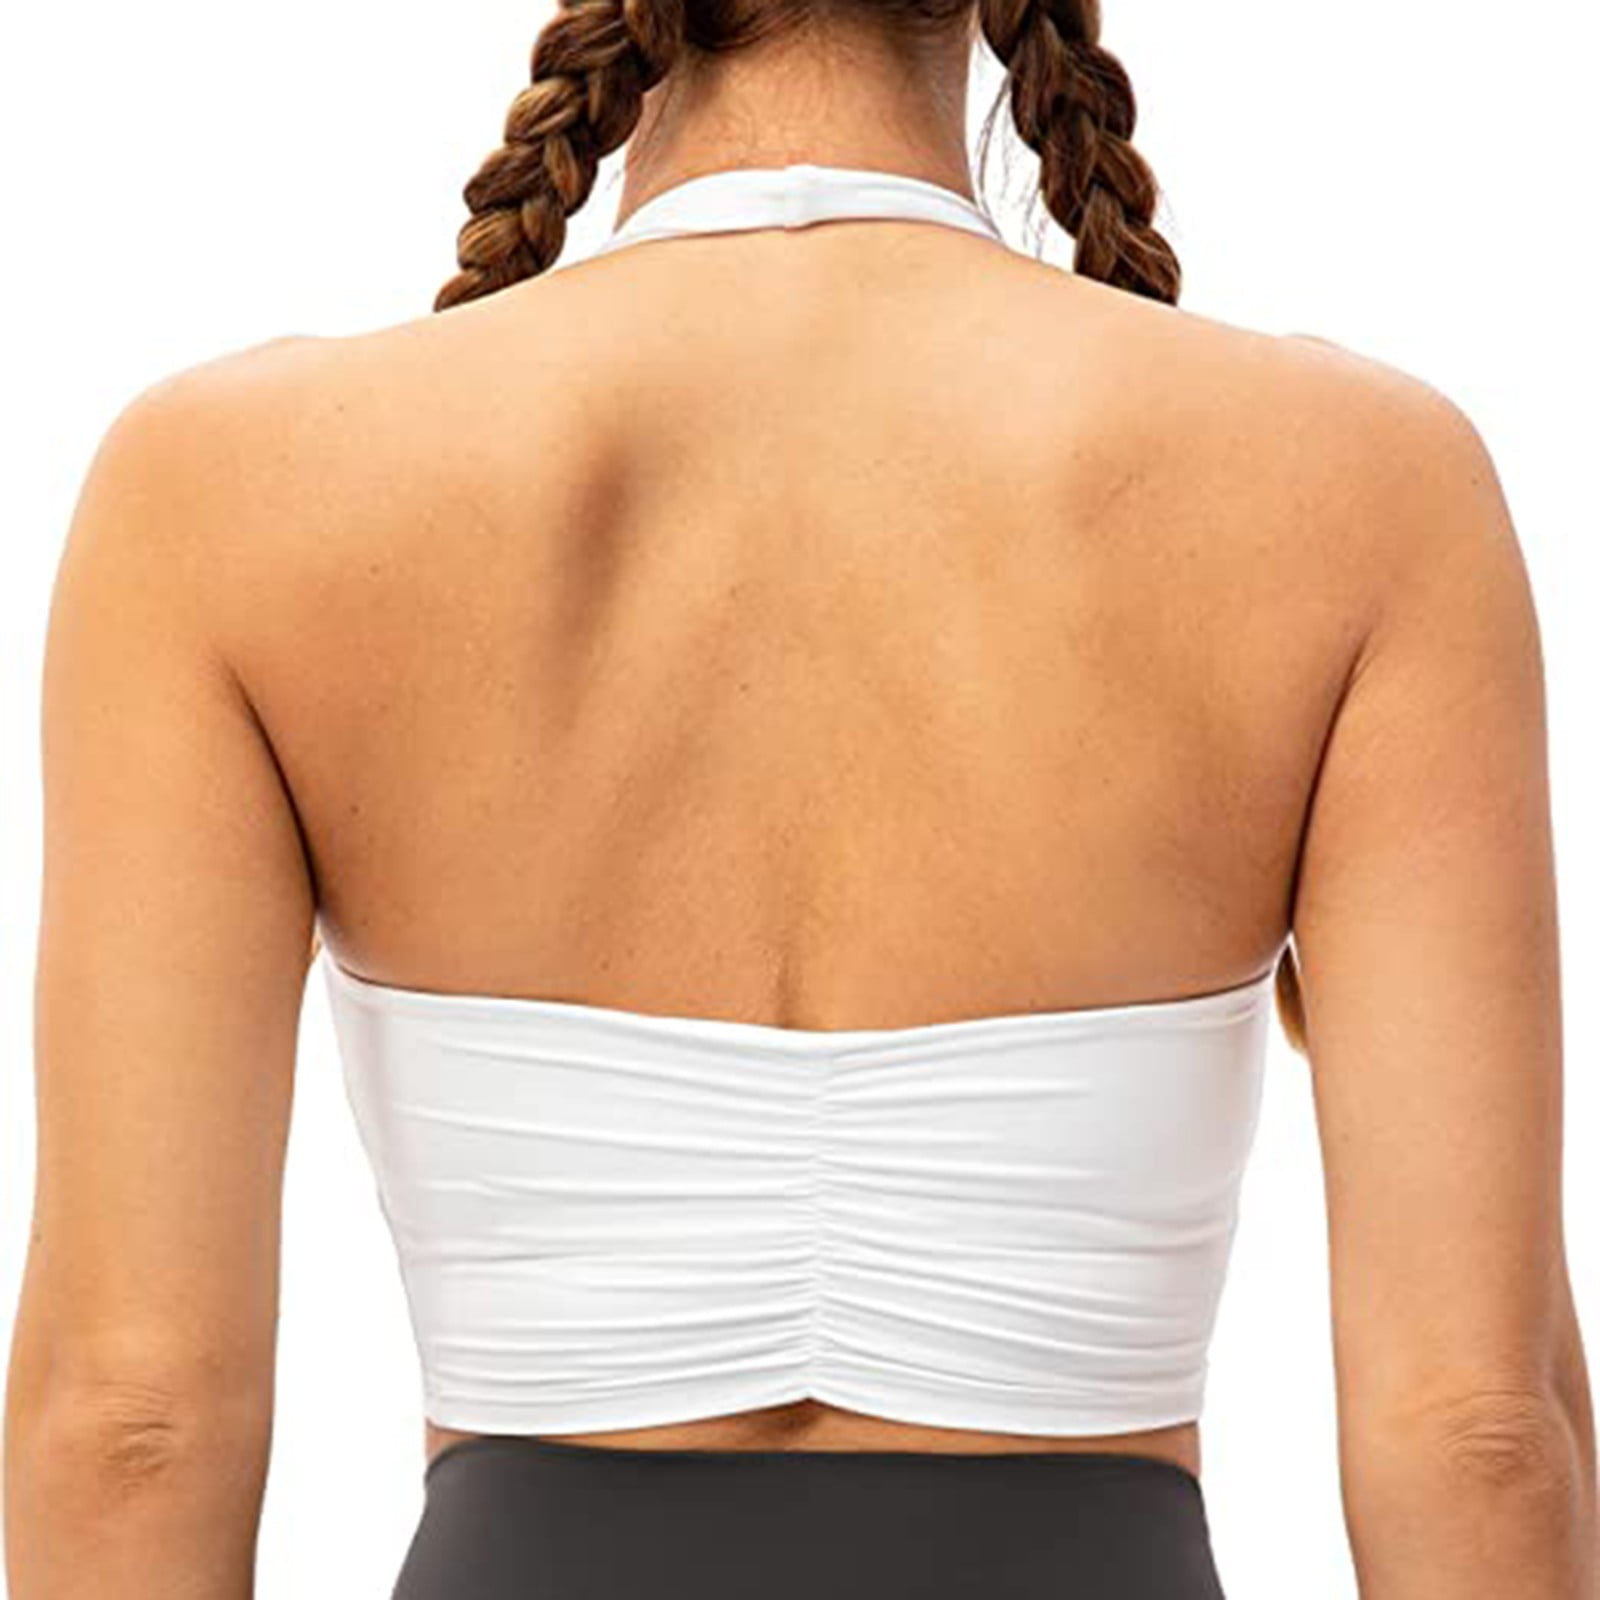  Women's Halter Sports Bra Yoga Bralette Crop Bras Top